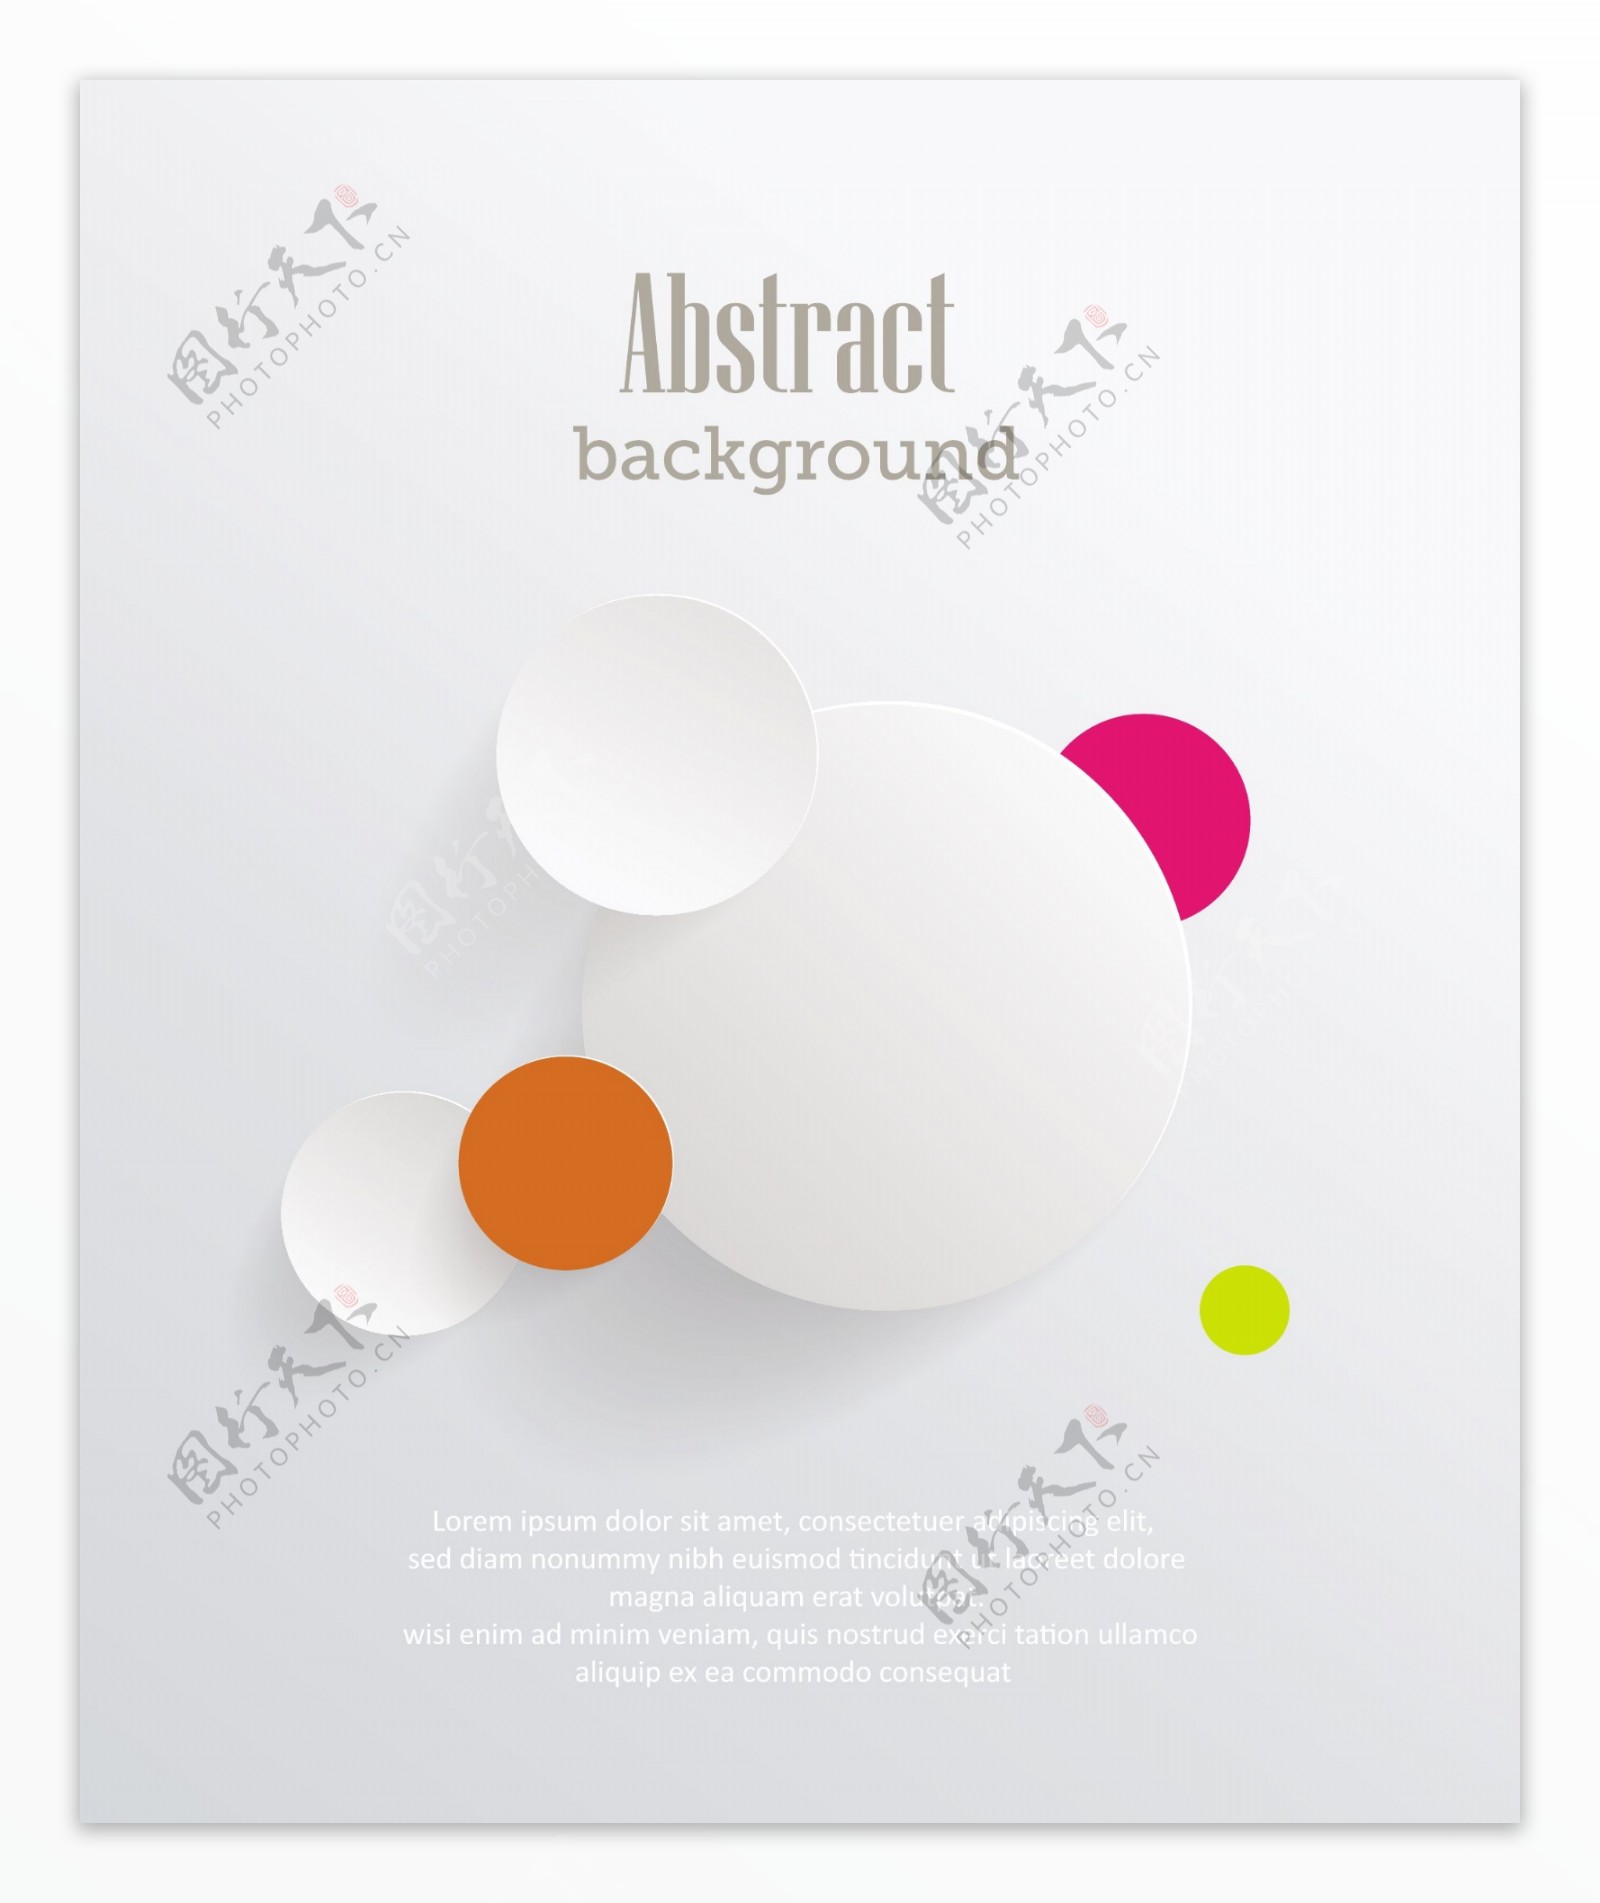 圆形抽象简约3d标志海报设计矢量素材